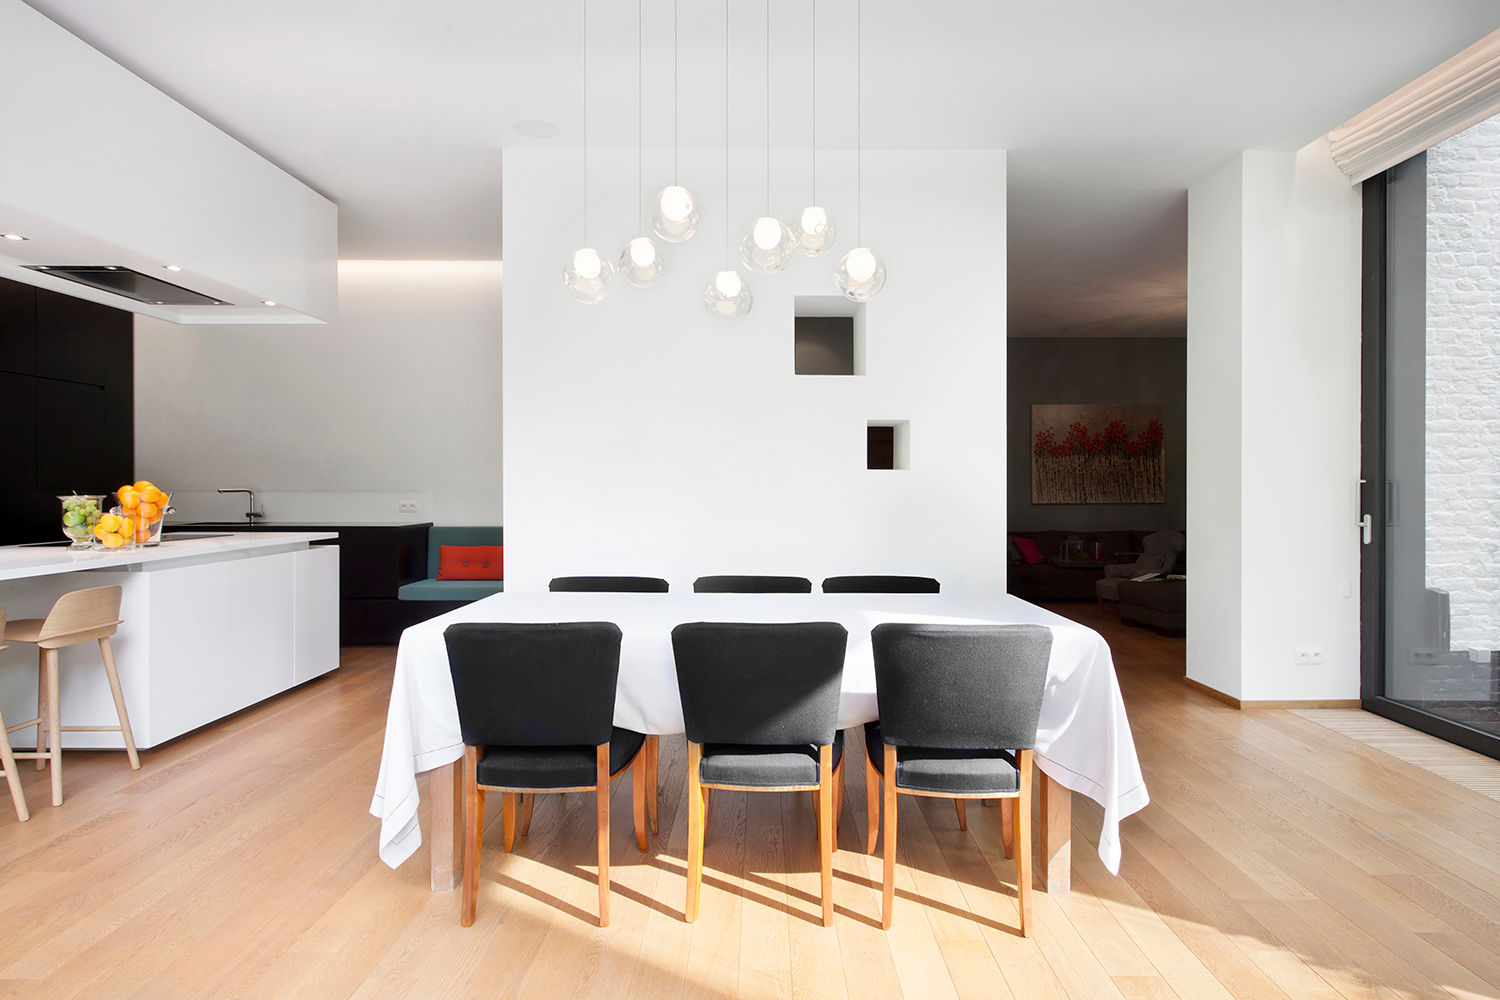 Living rooms reinterpreted, Olivier Vitry Architecture Olivier Vitry Architecture Casas minimalistas